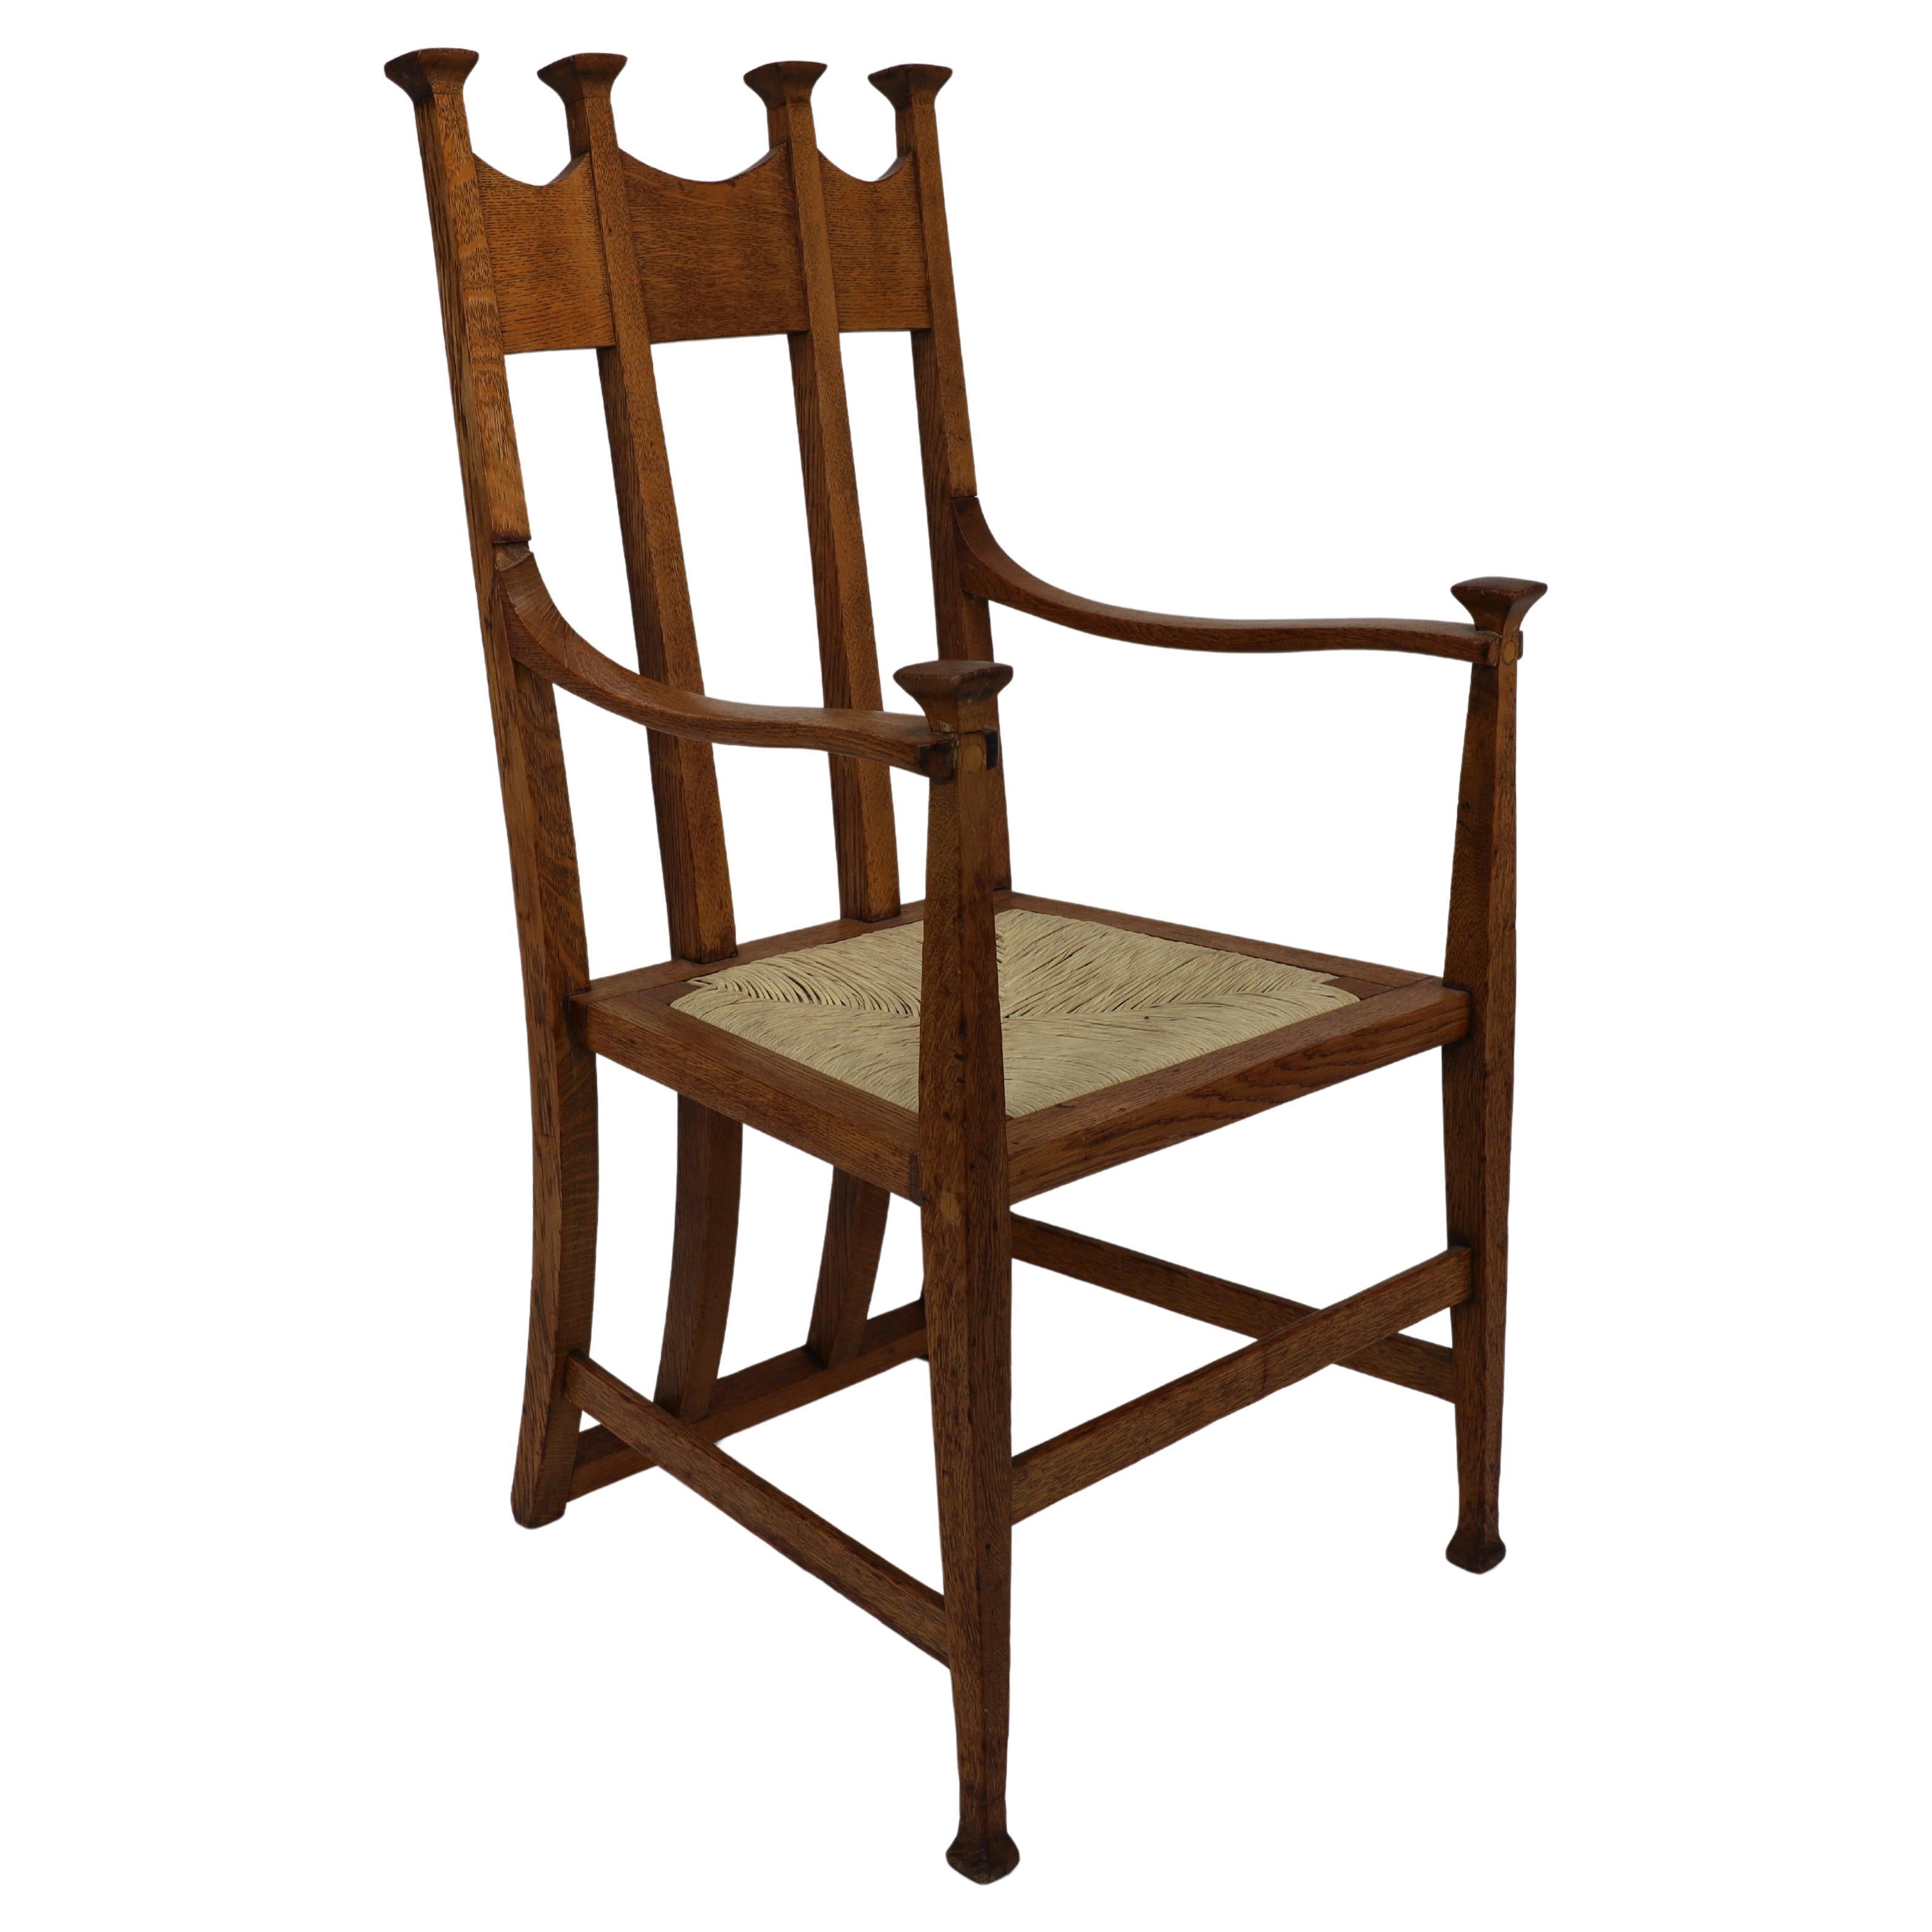 J.S HENRY Chaise de salle à manger en chêne, de style Arts & Crafts, avec un dossier en forme de trône.